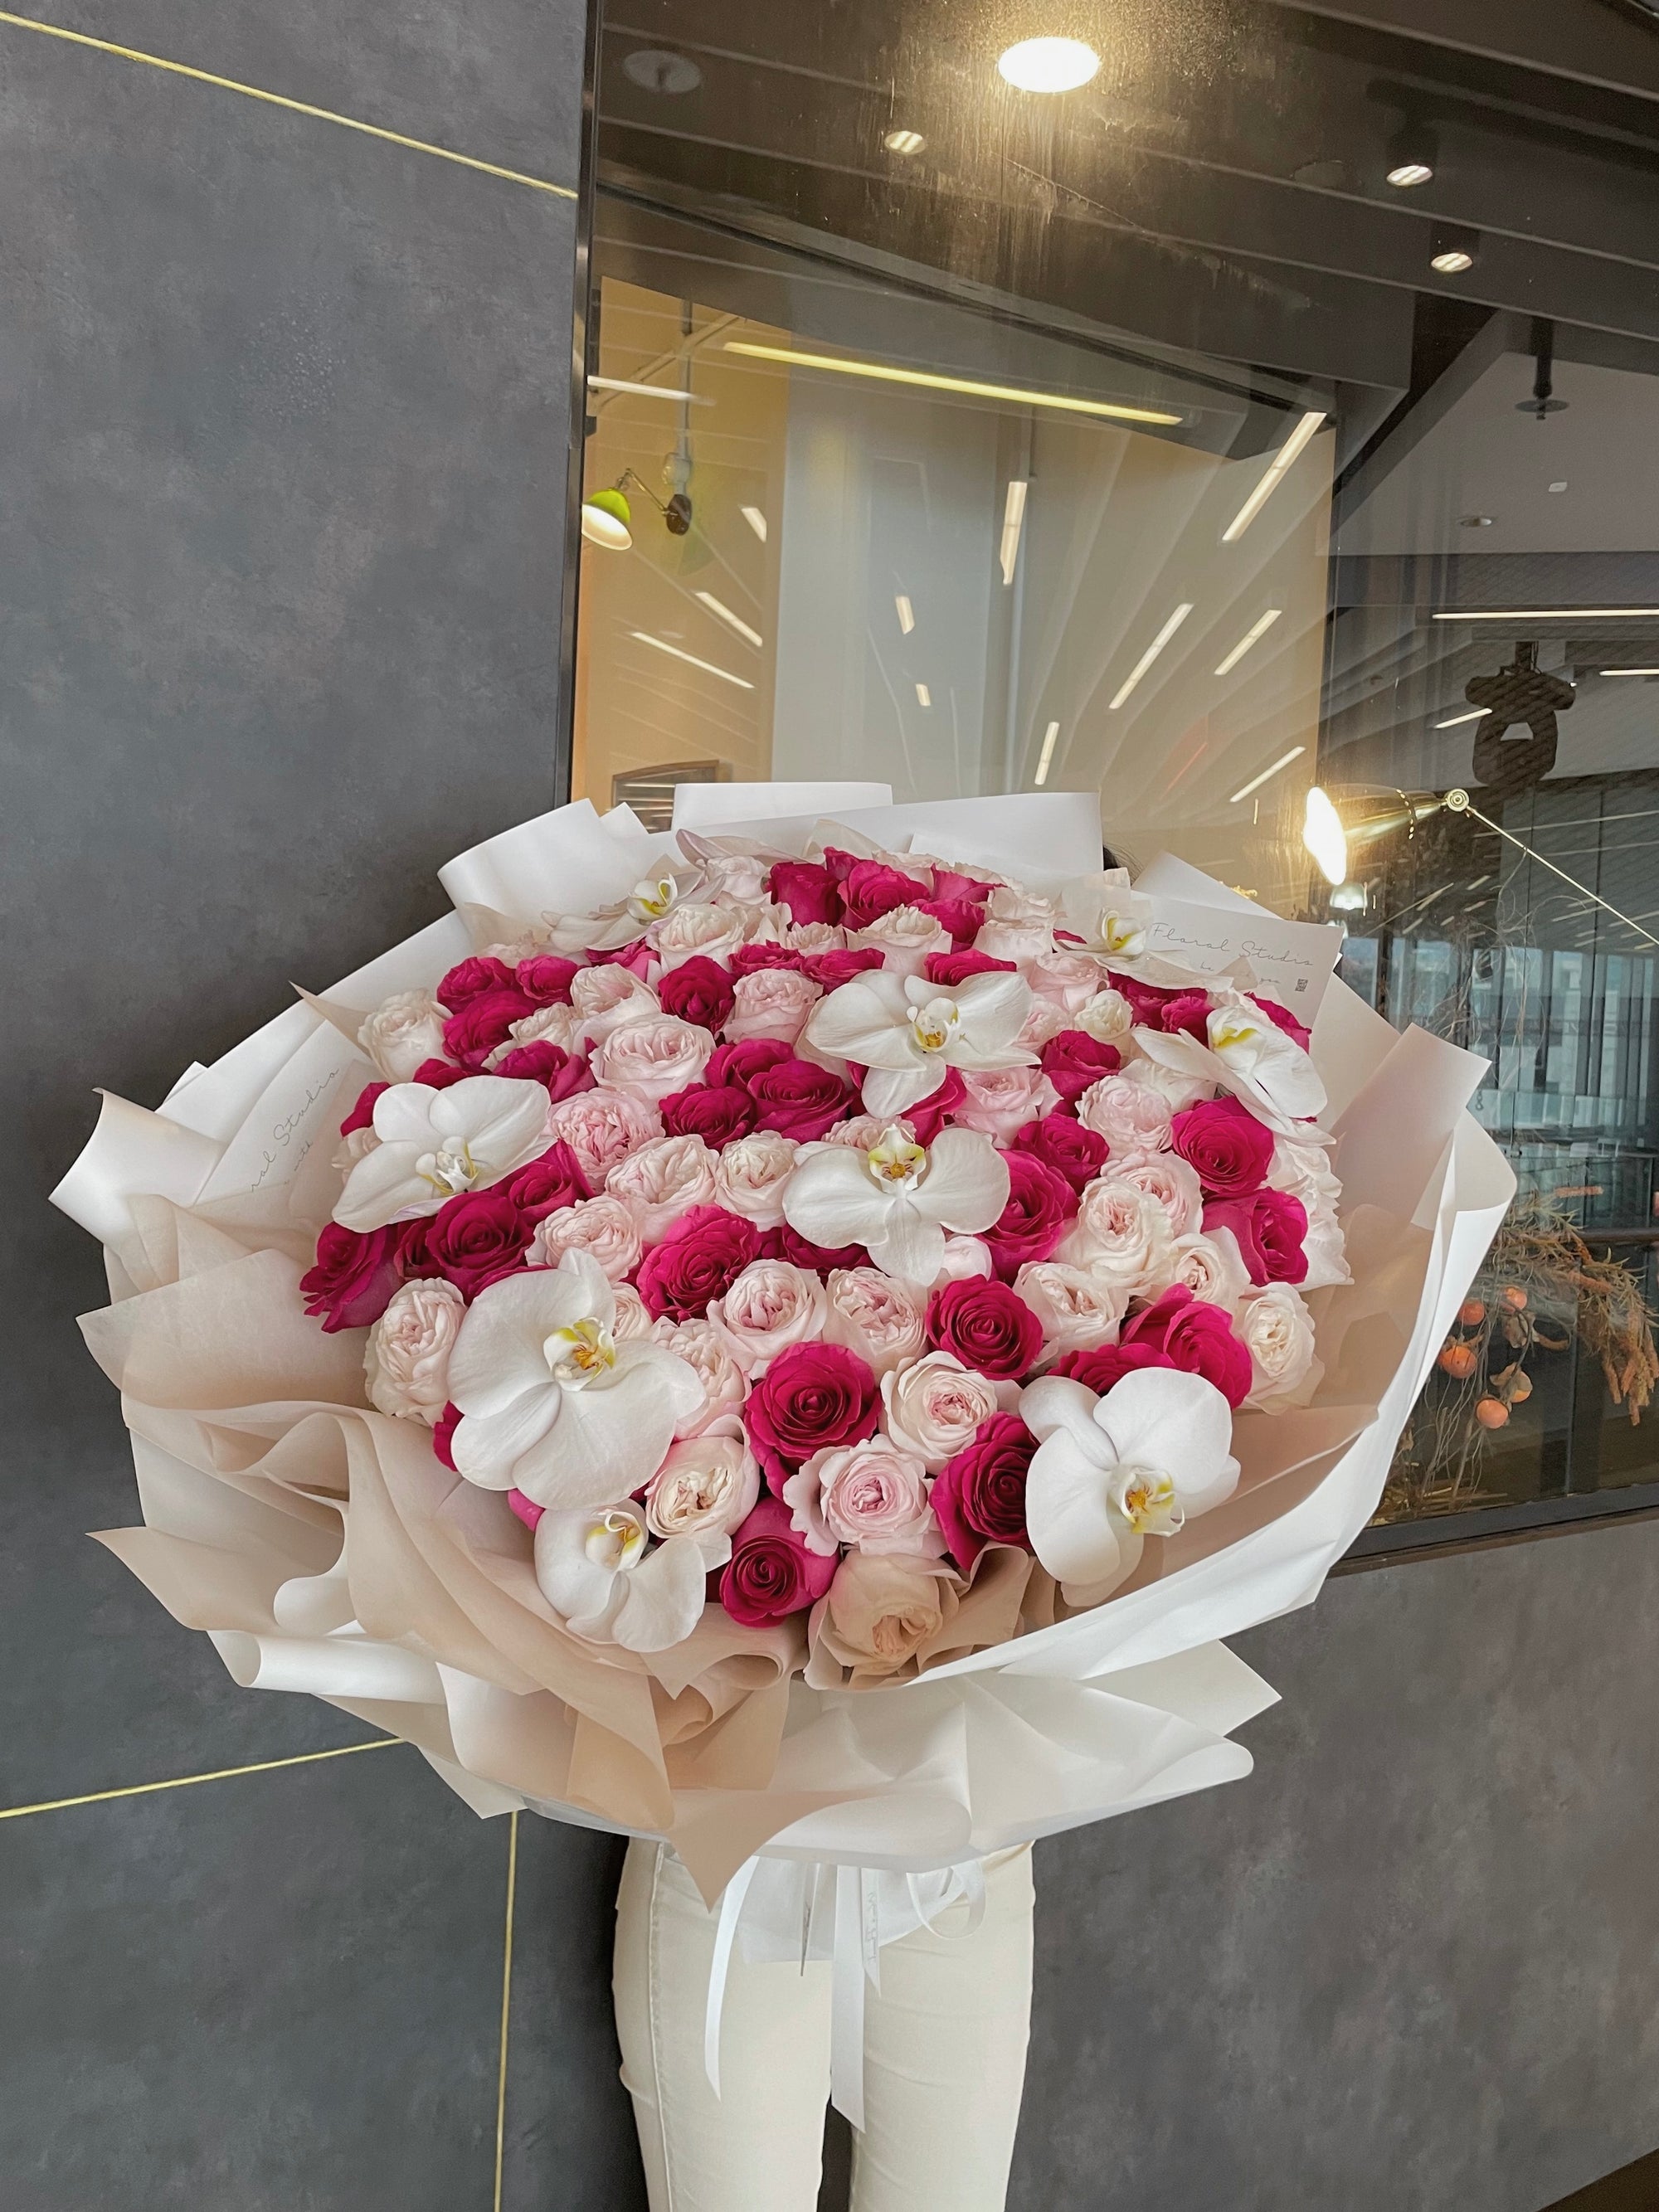 Wen's Floral Studio Bouquets Table Arrangements Weddings Events Workshop Roses Only Singapore